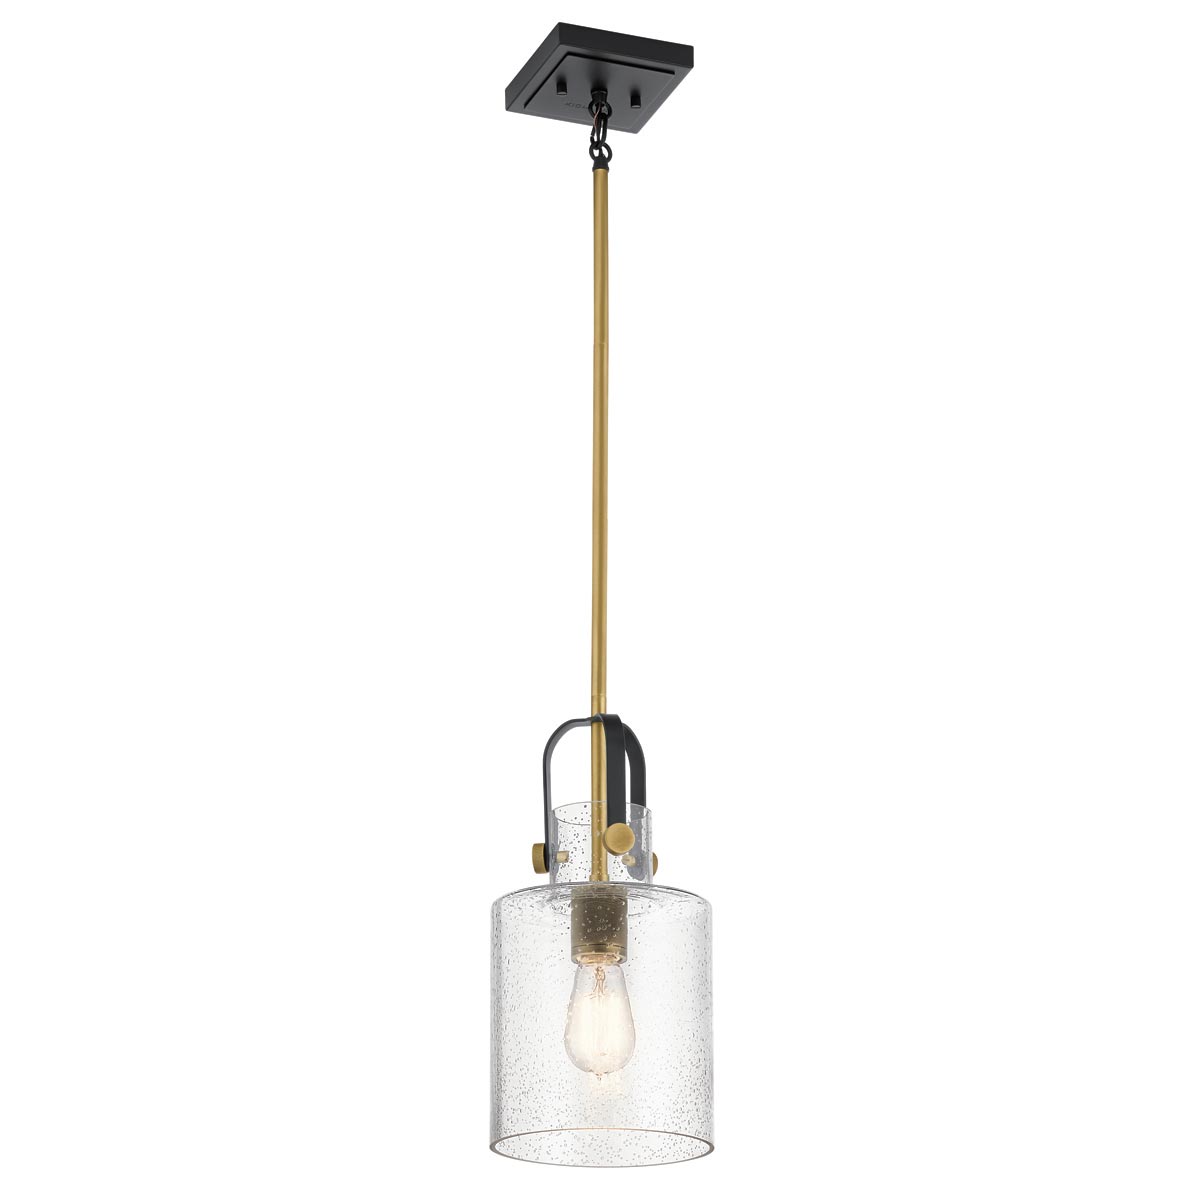 Kitner 1 Light Industrial Ceiling Pendant Black / Brass Seedy Glass